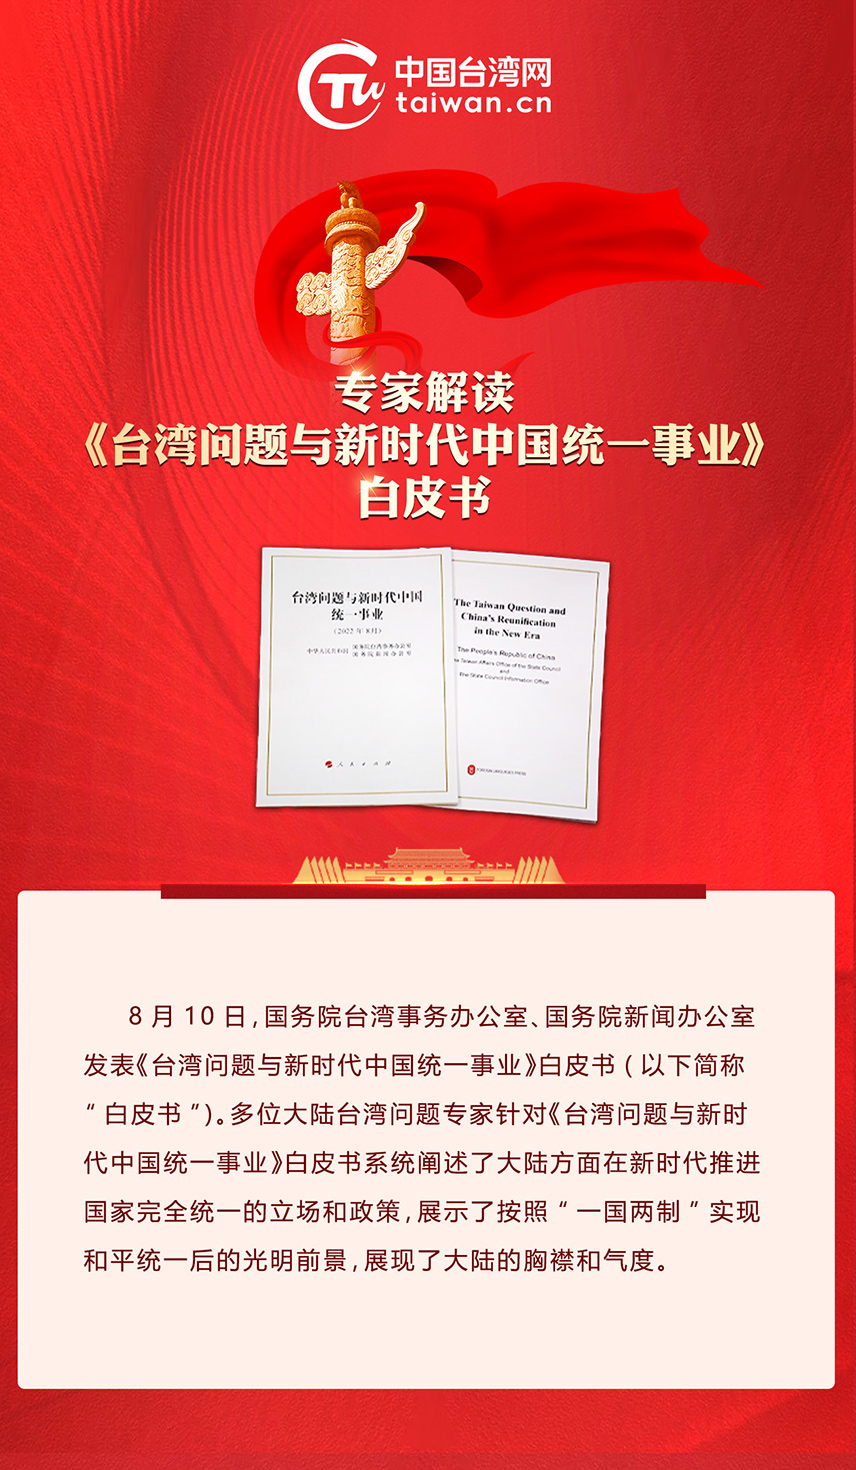 專家解讀《台灣問題與新時代中國統一事業》白皮書